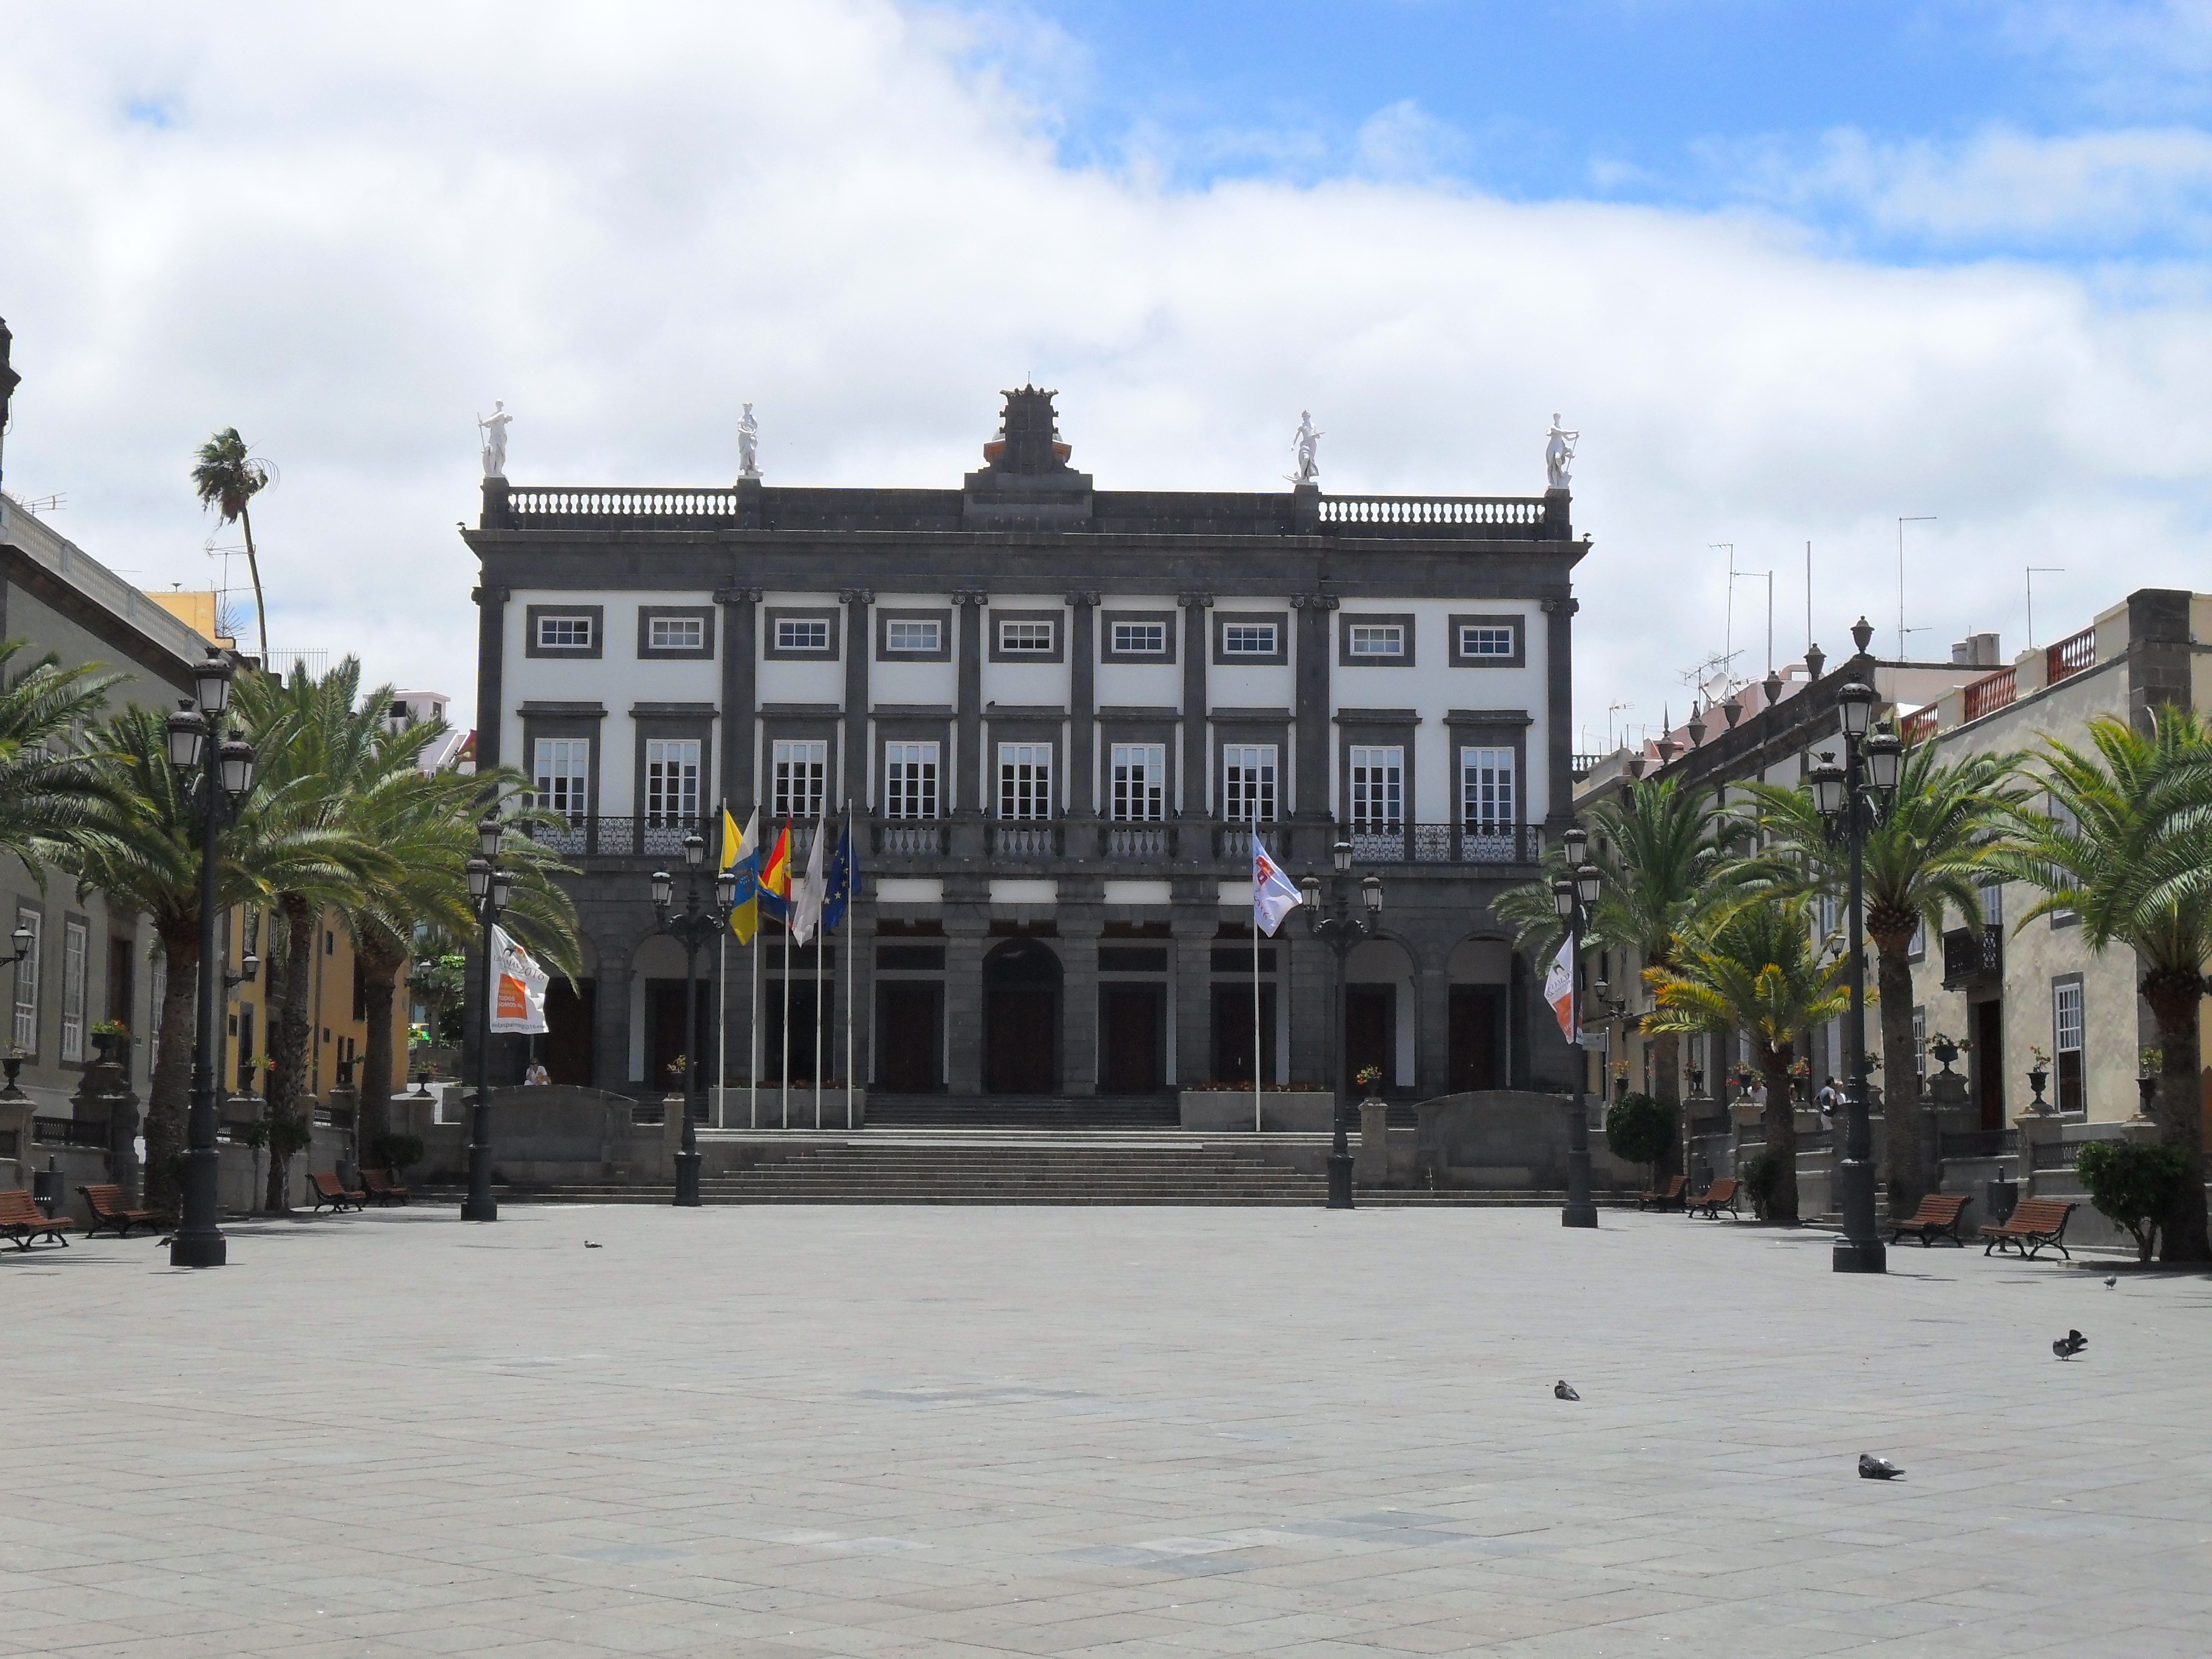 Casas Consistoriales de Palmas de - Wikipedia, la enciclopedia